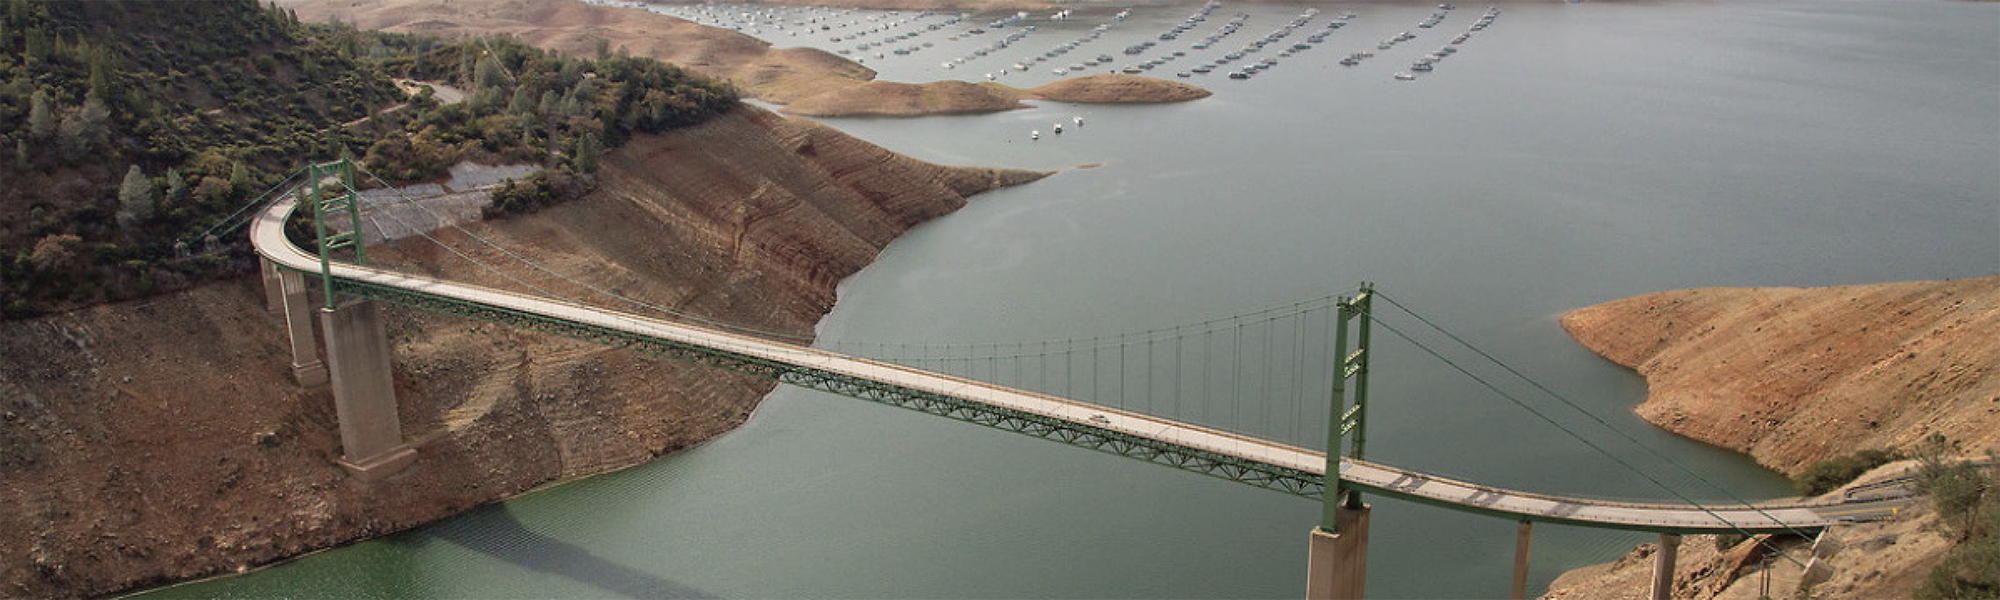 La planta de Ecolab en City of Industry (California), certificada como líder en administración del agua